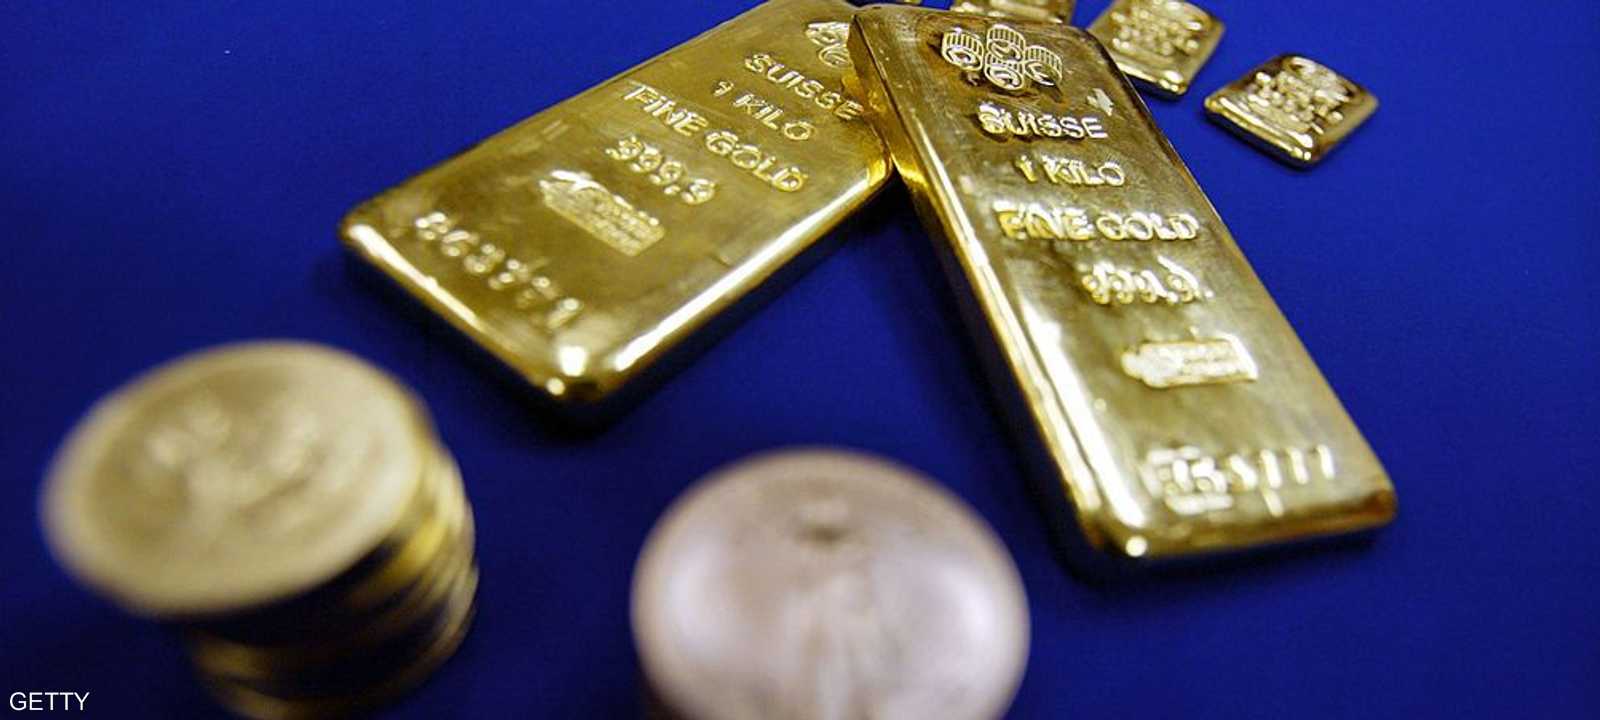 الذهب الأميركي انخفض هو الآخر 0.4 في المئة إلى 1341.20 دولار للأوقية.